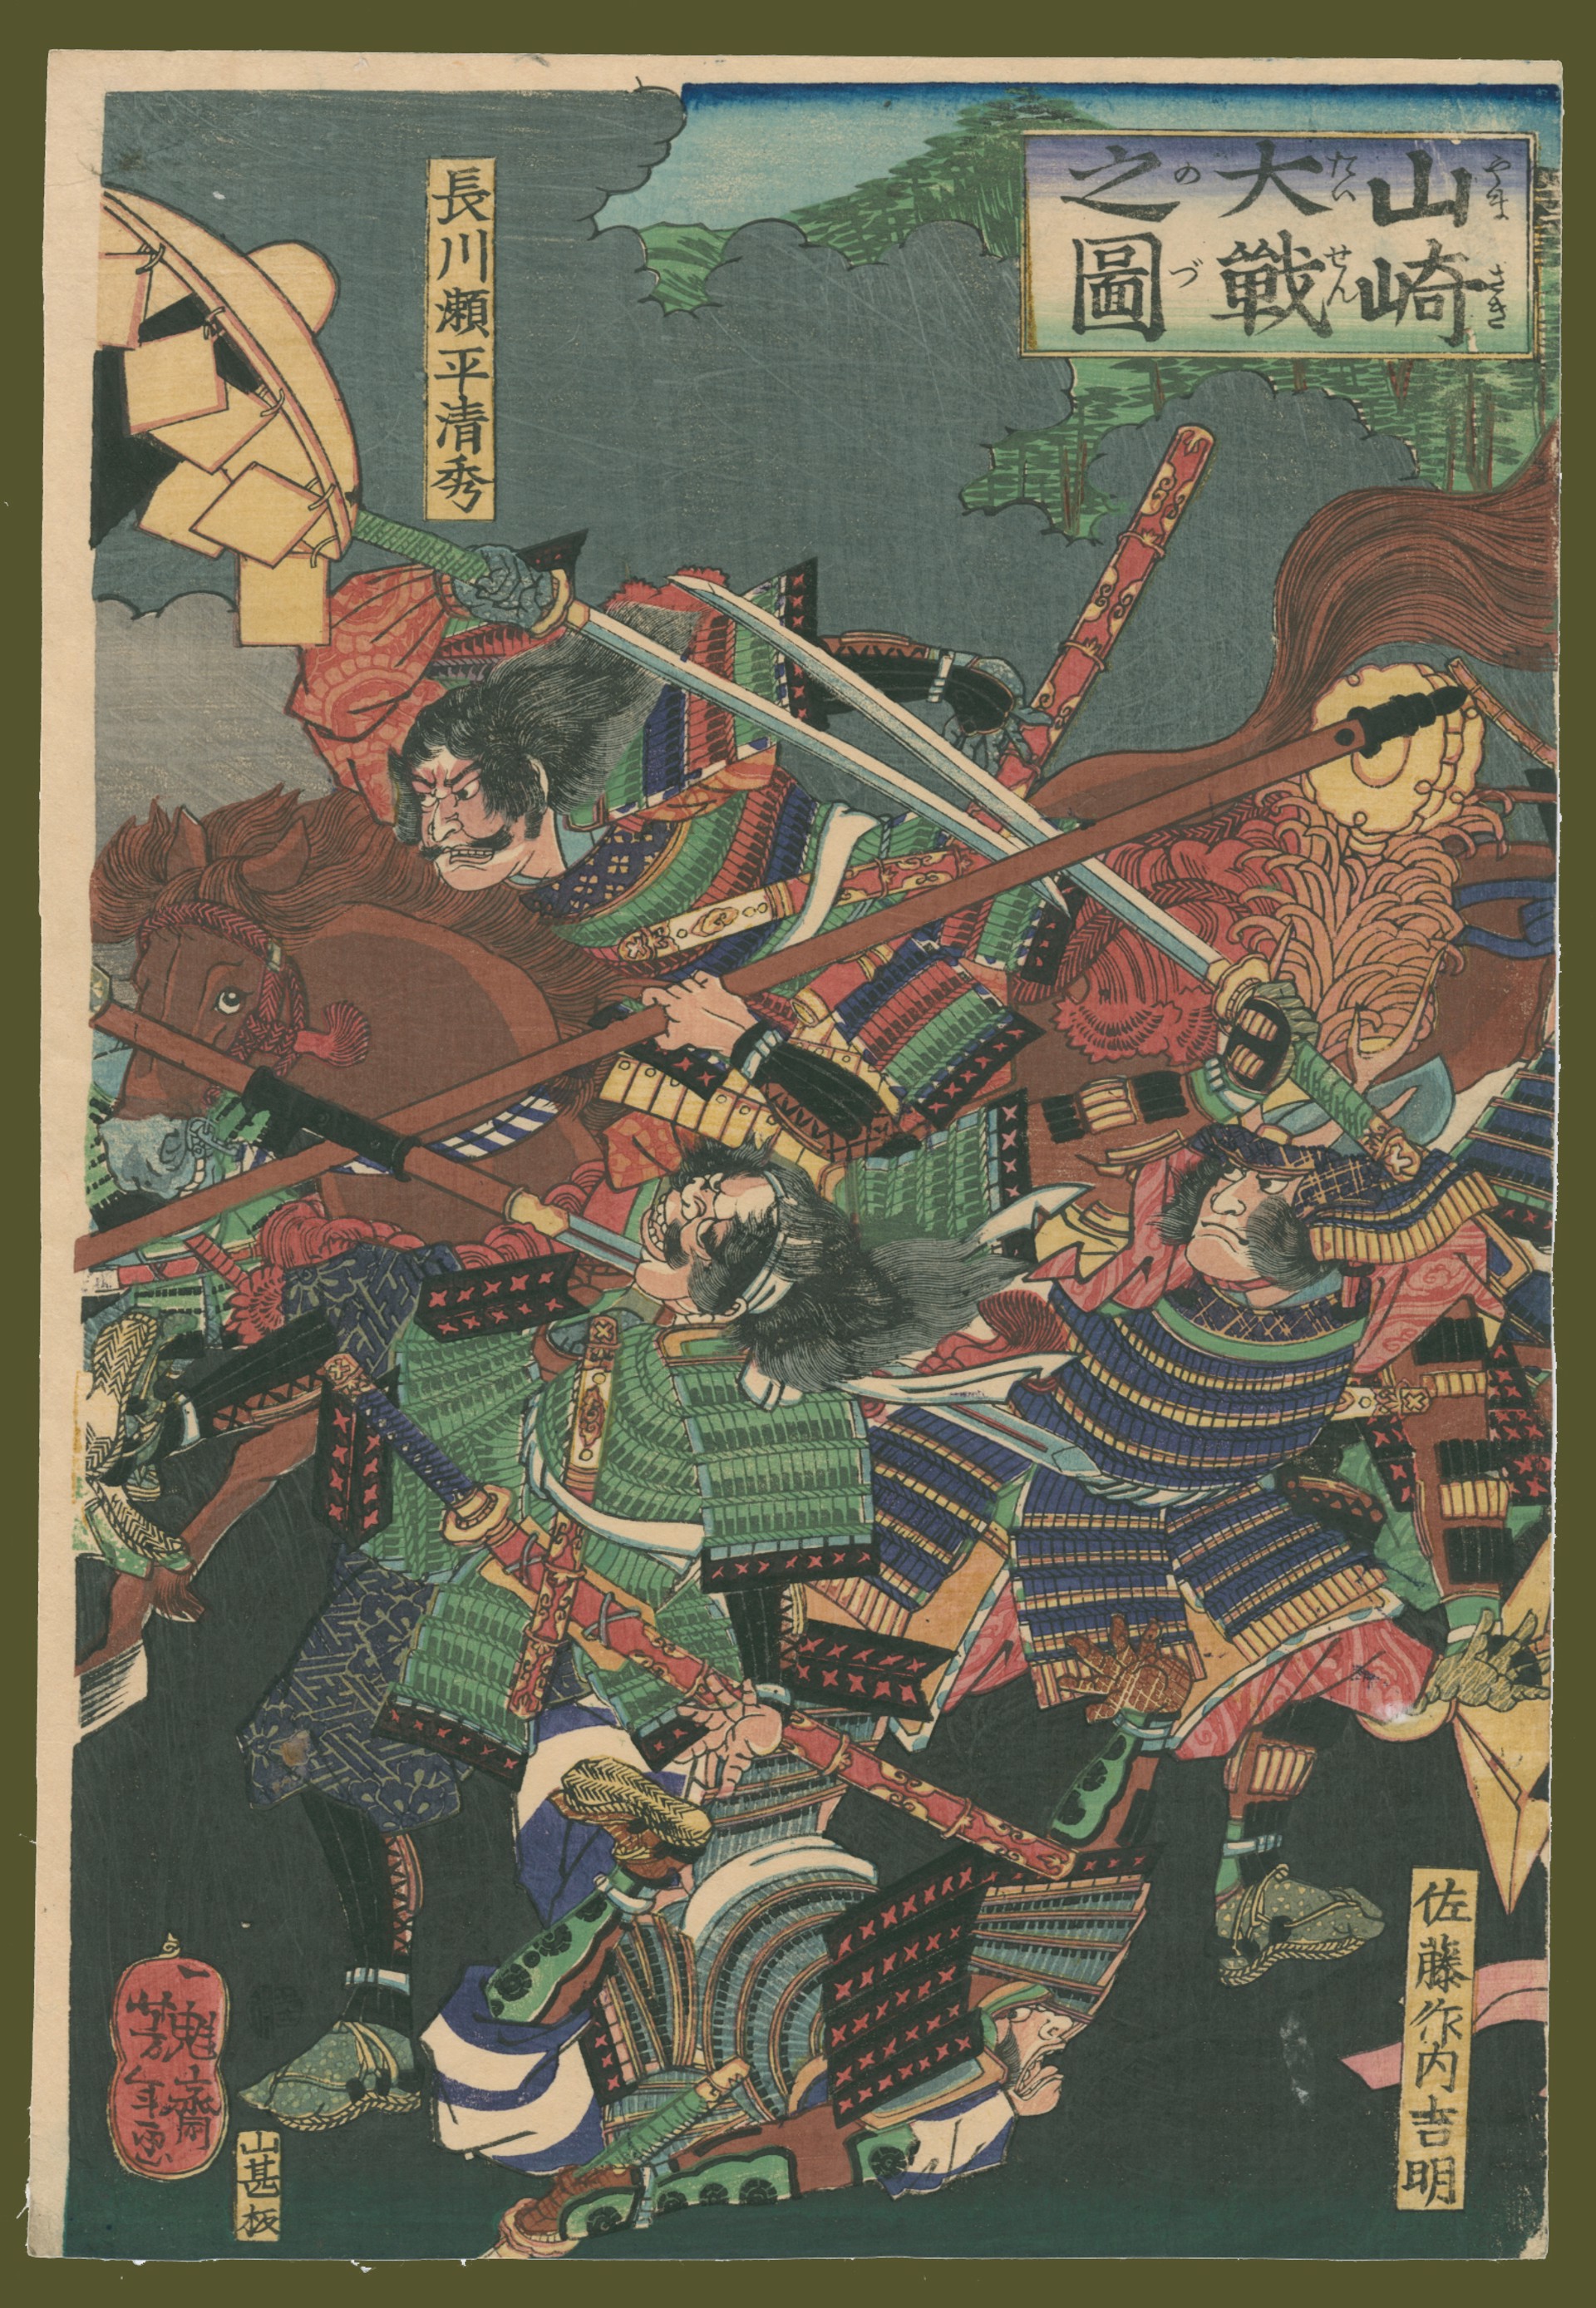 The Great Battle of Yamazaki by Yoshitoshi